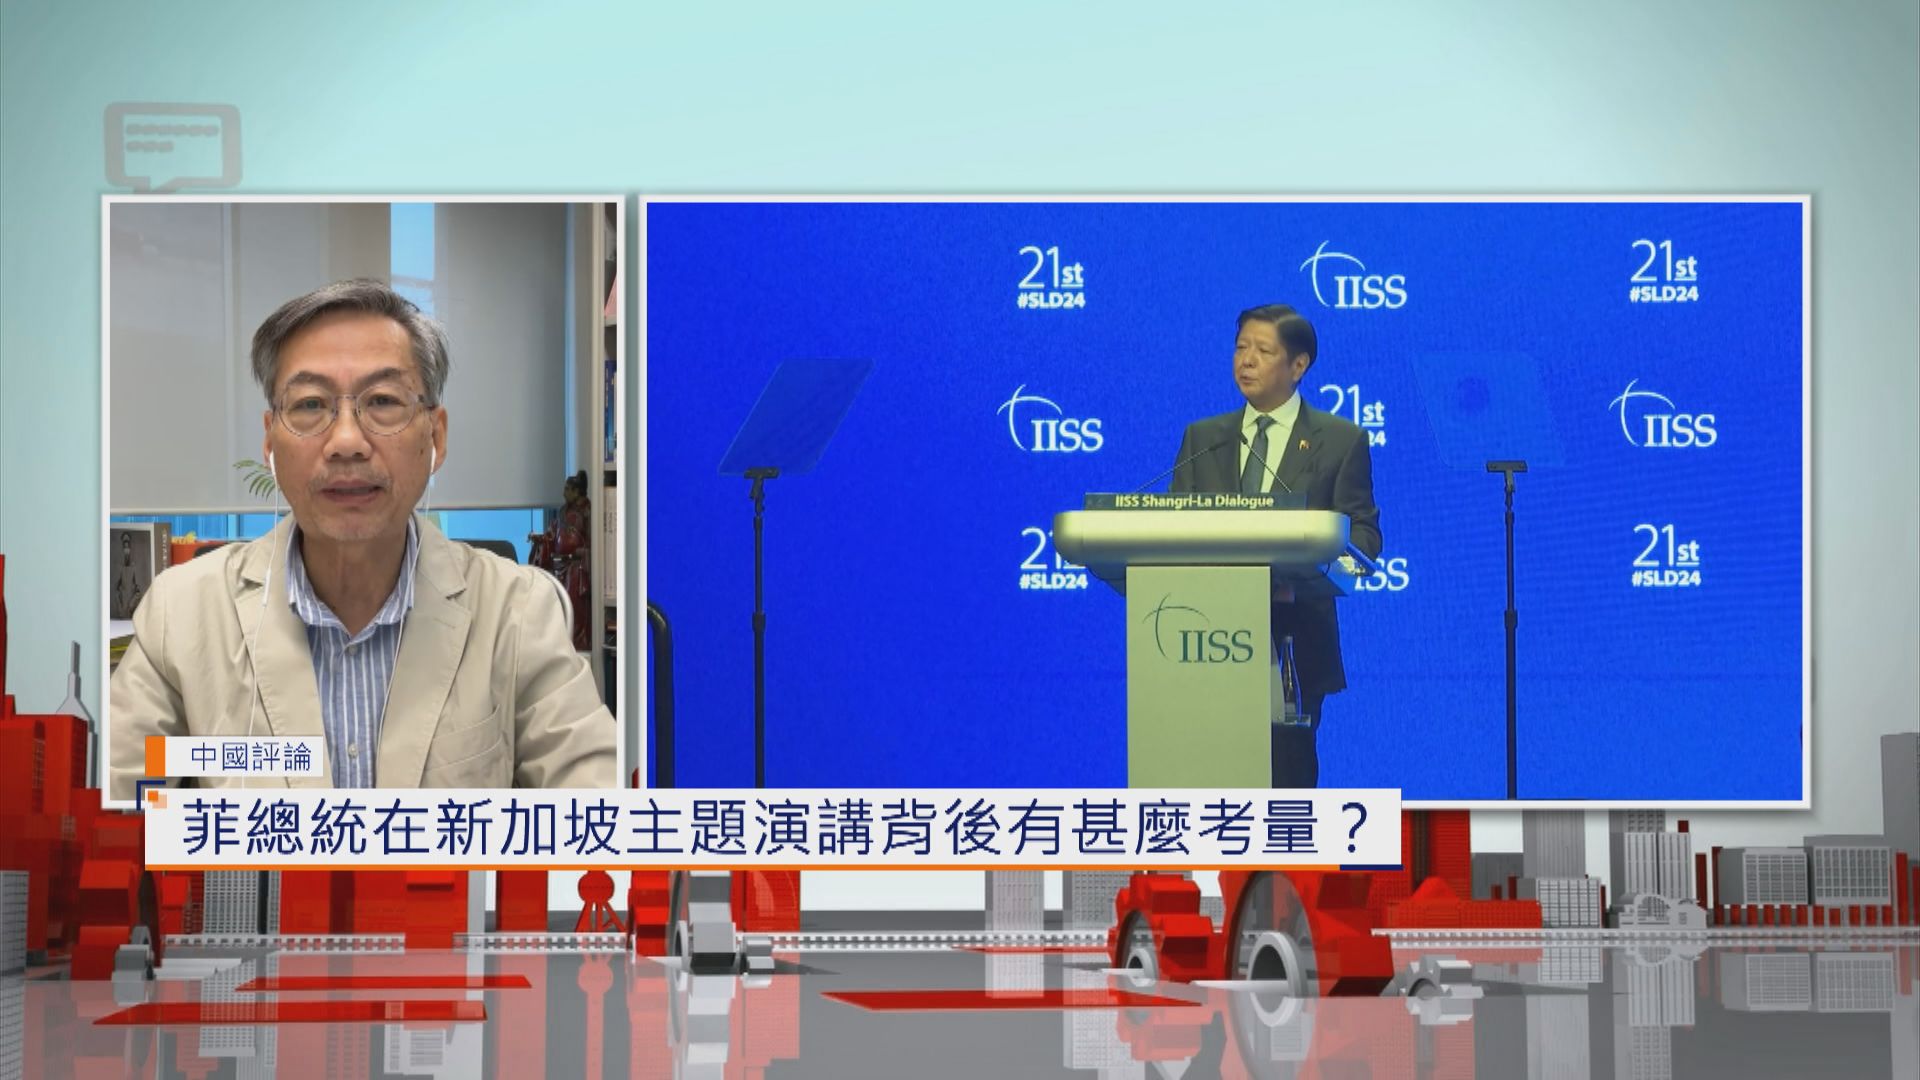 【中國評論】菲總統在新加坡主題演講背後有甚麼考量？